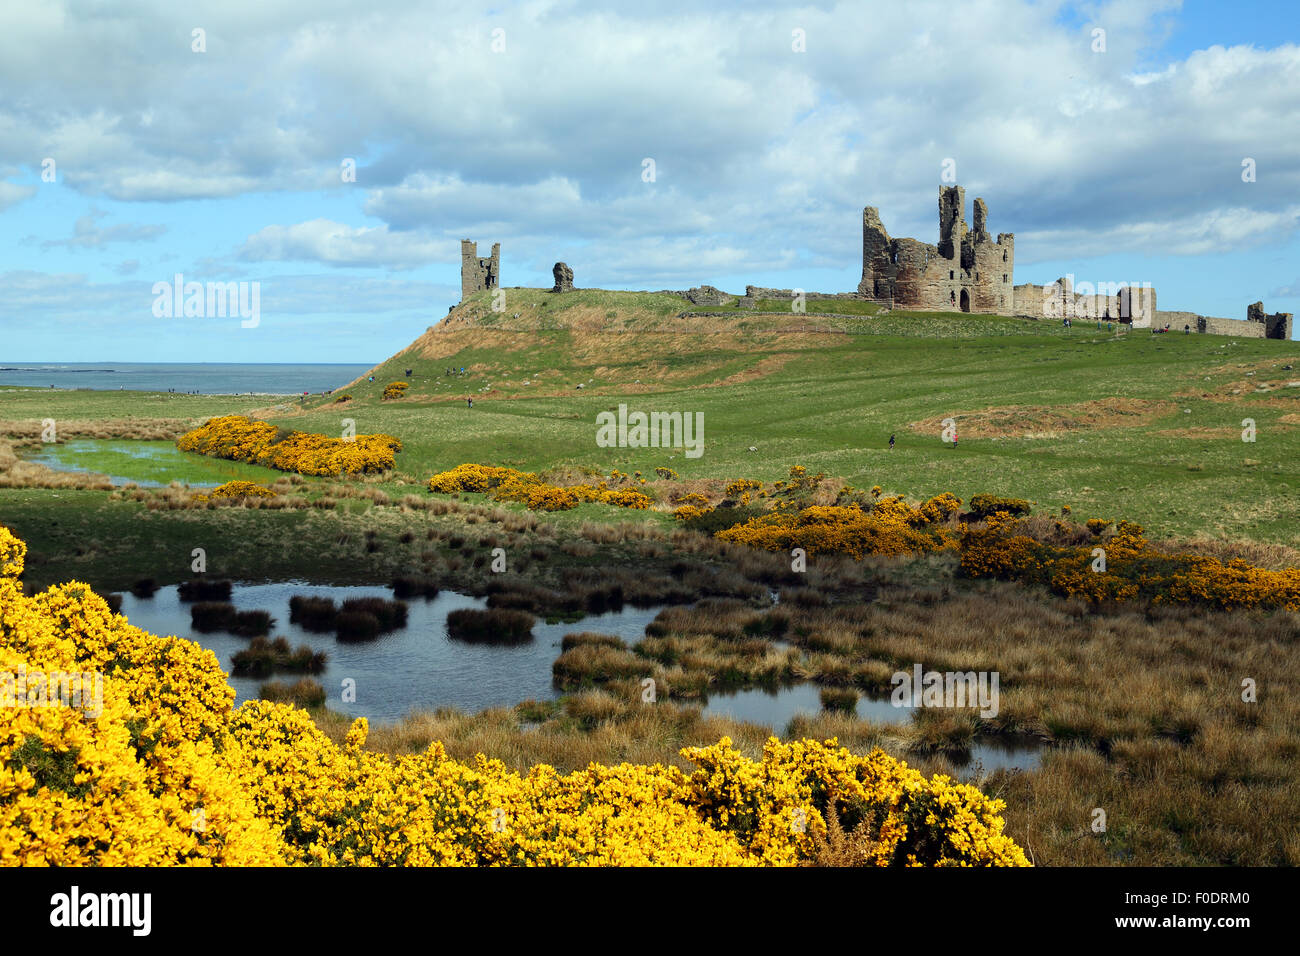 Il castello di Dunstanburgh, Northumberland, con un laghetto e ginestre in fiore in primo piano Foto Stock